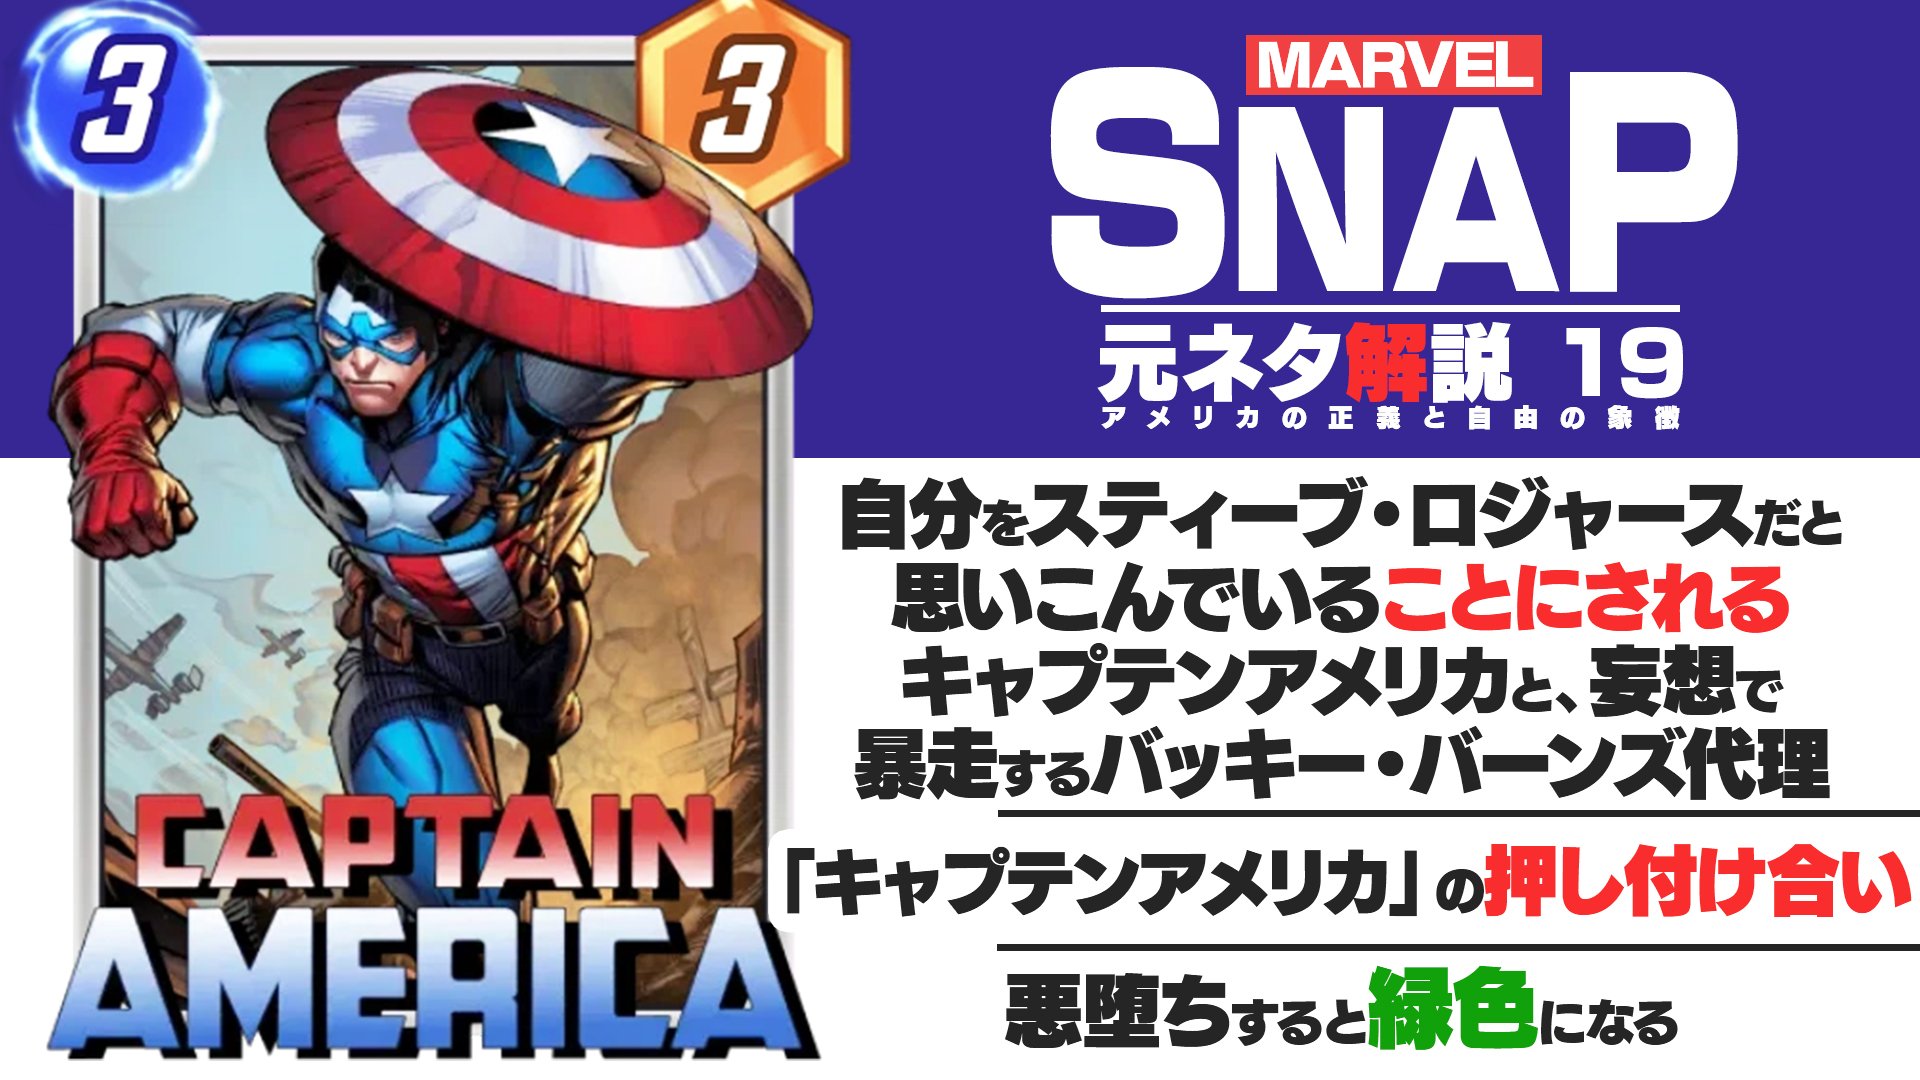 最適な材料 Marvel Captain America キャプテン アメリカ マーベル